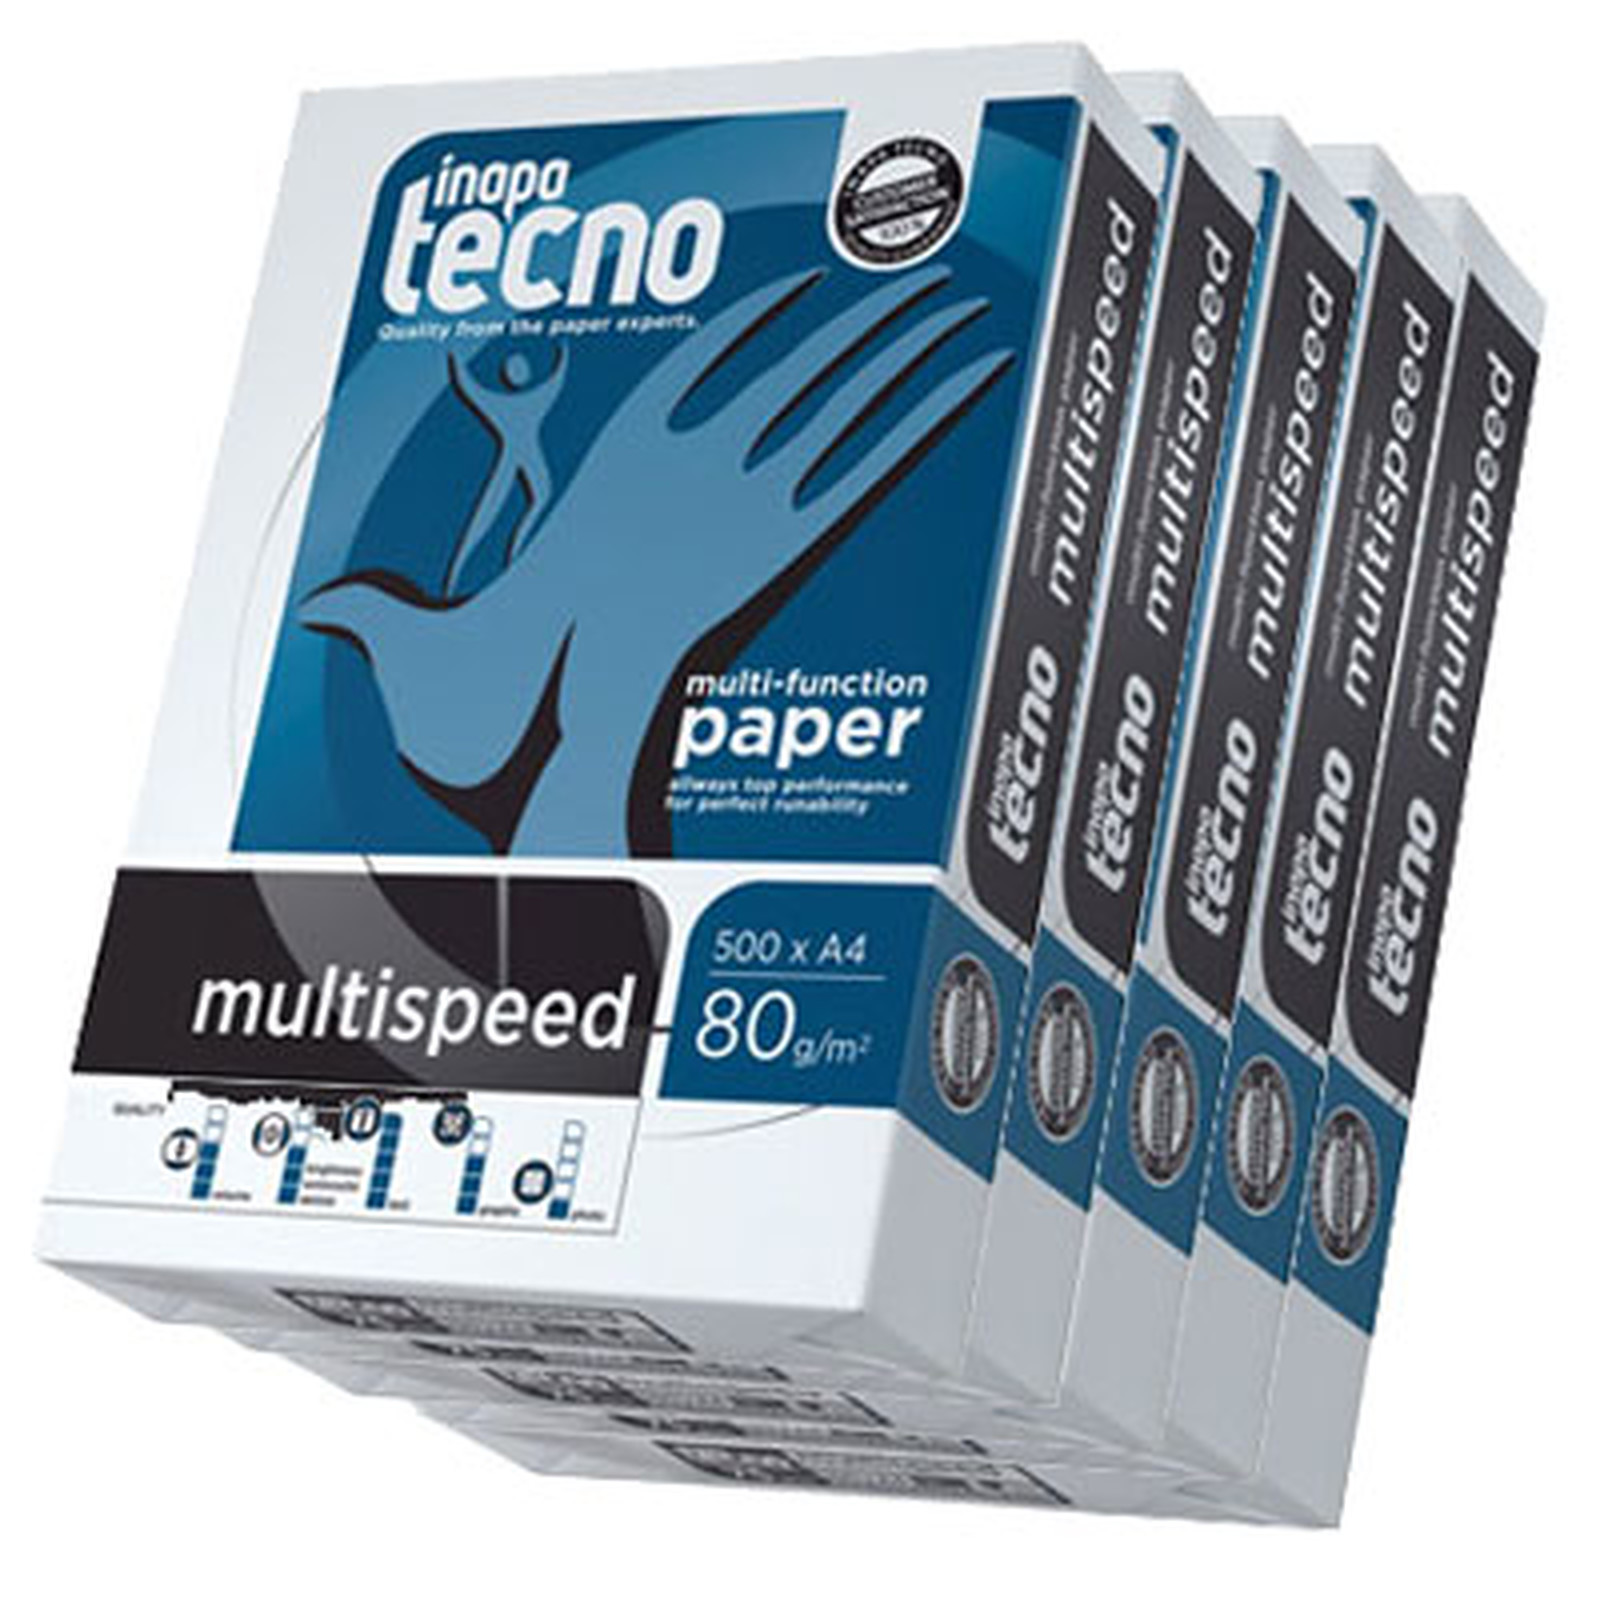 Inapa Tecno MultiSpeed Ramettes 500 feuilles A4 80g blanc x5 - Ramette de papier Inapa